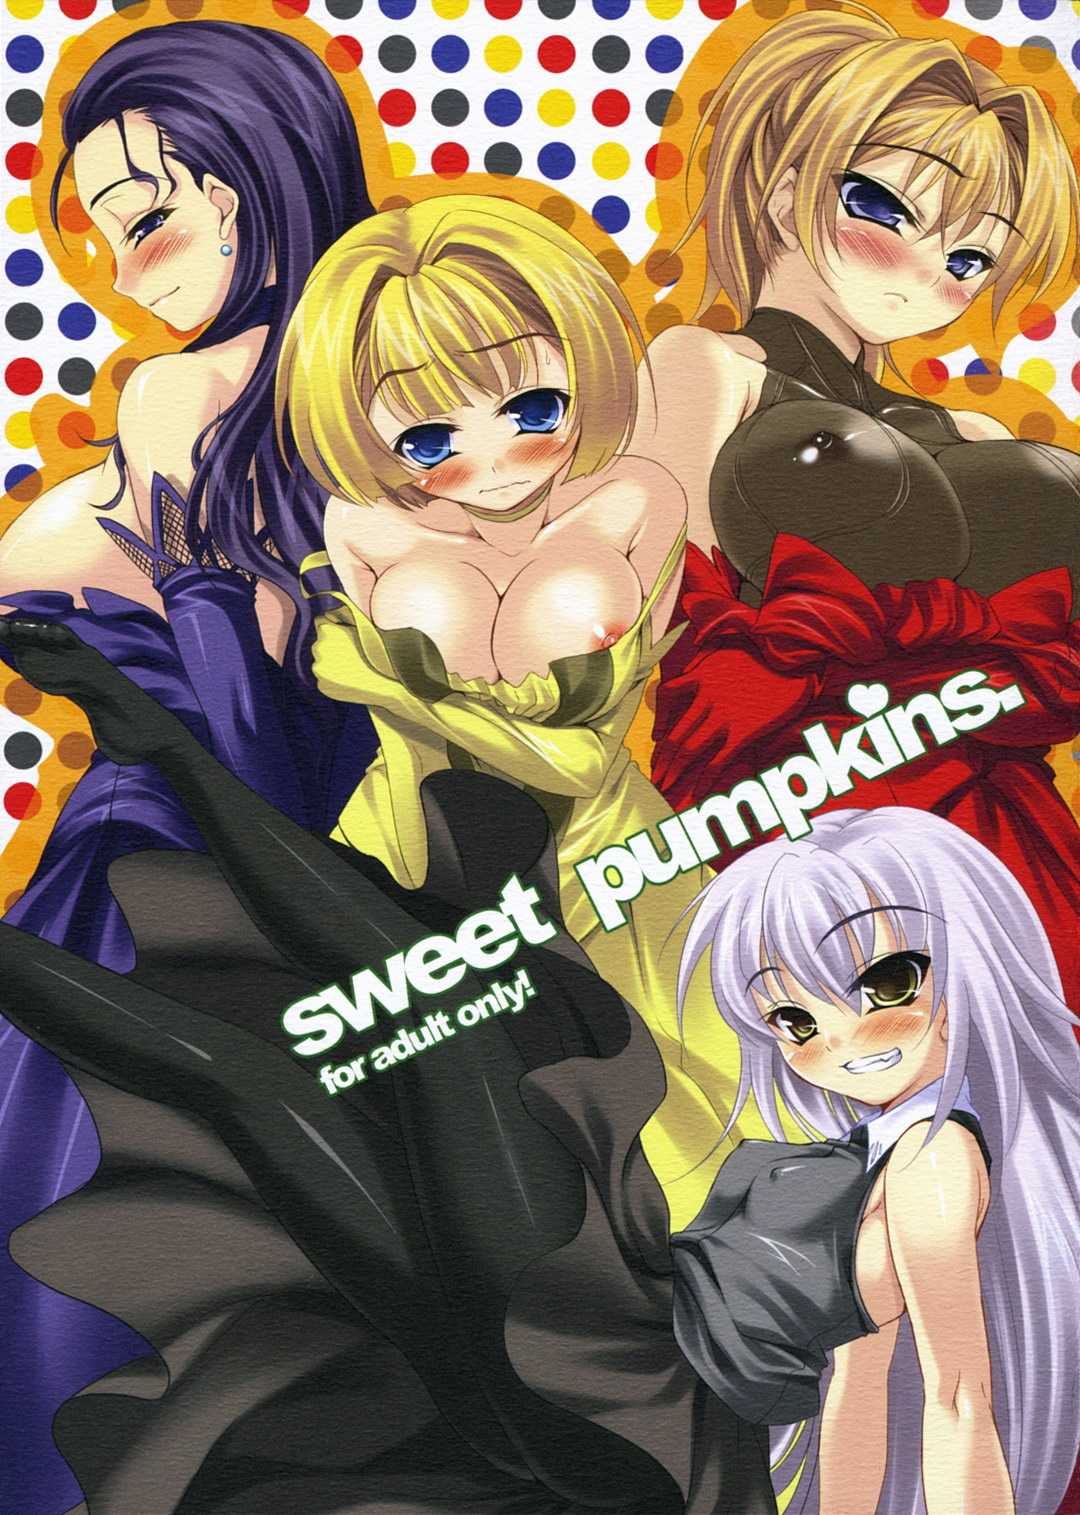 (SC35)[etcycle (Kure Masahiro)] Sweet Pumpkins (サンクリ35)[etcycle (呉マサヒロ)] Sweet Pumpkins